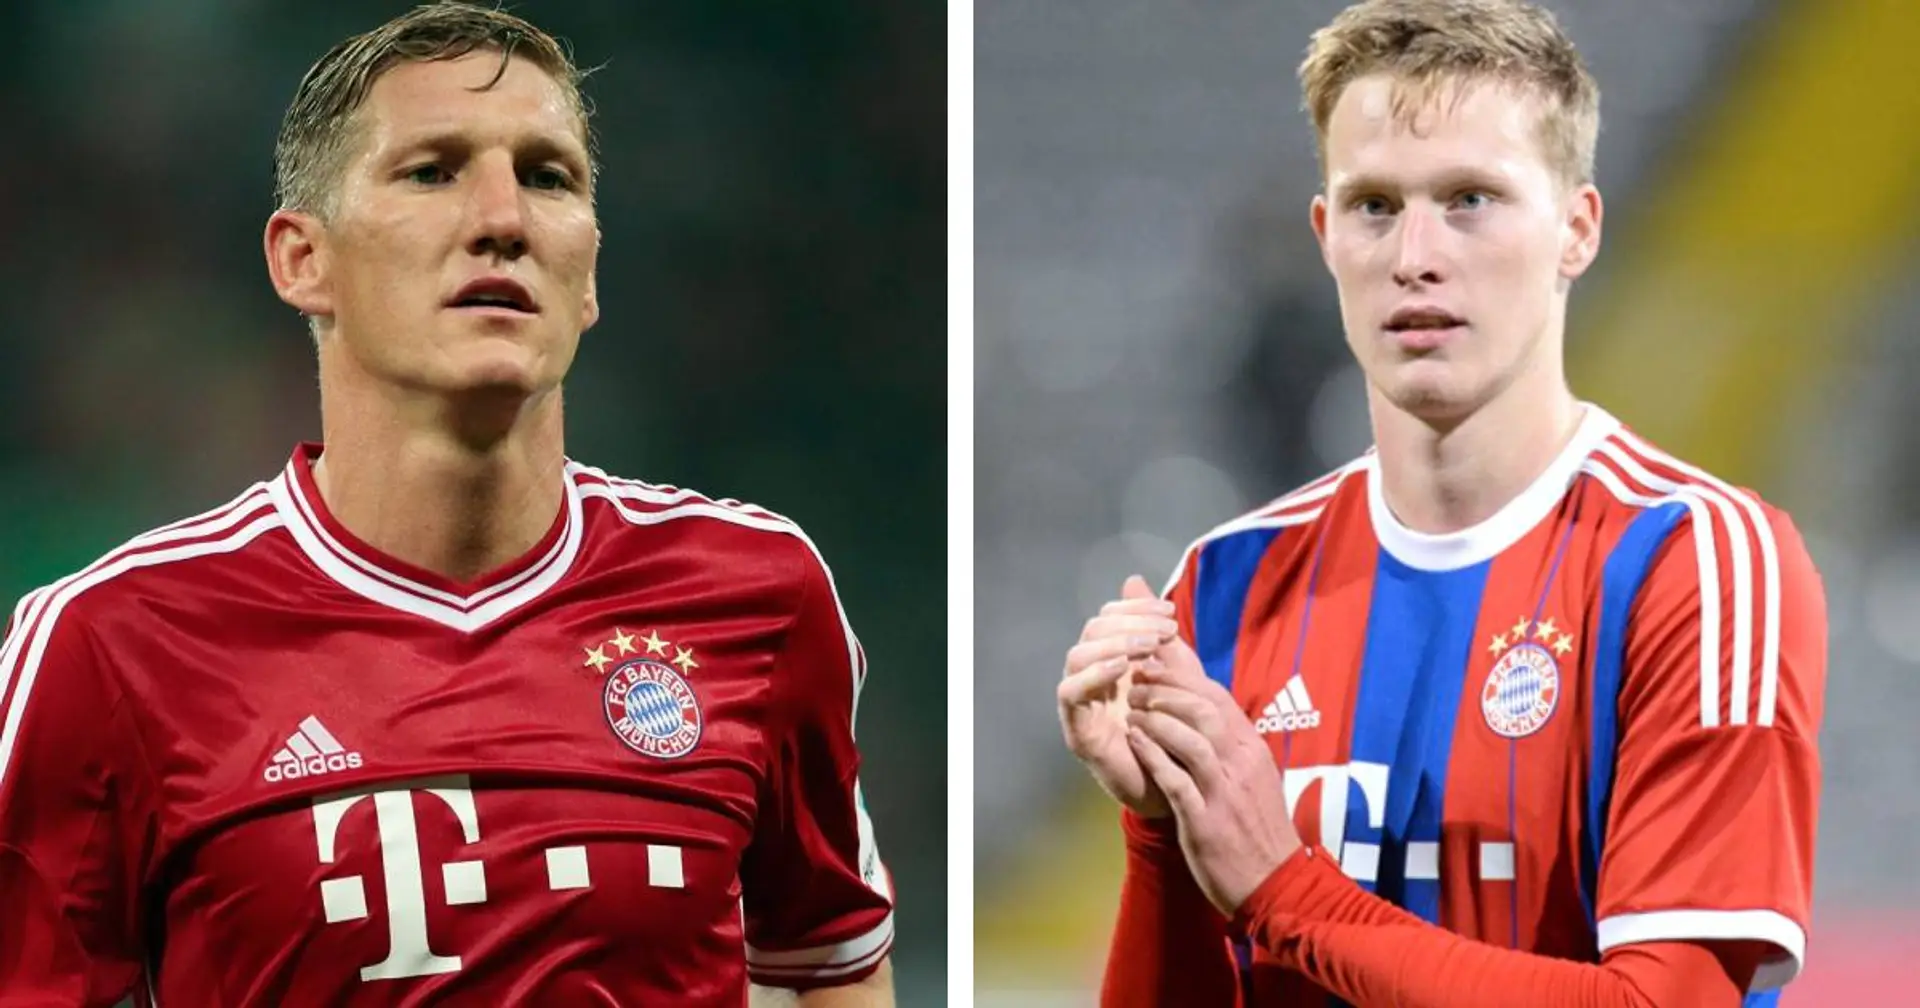 Münster-Spieler Wegkamp enthüllt, dass sich Schweinsteiger um ihn kümmerte, als er für FCB-Amateure spielte